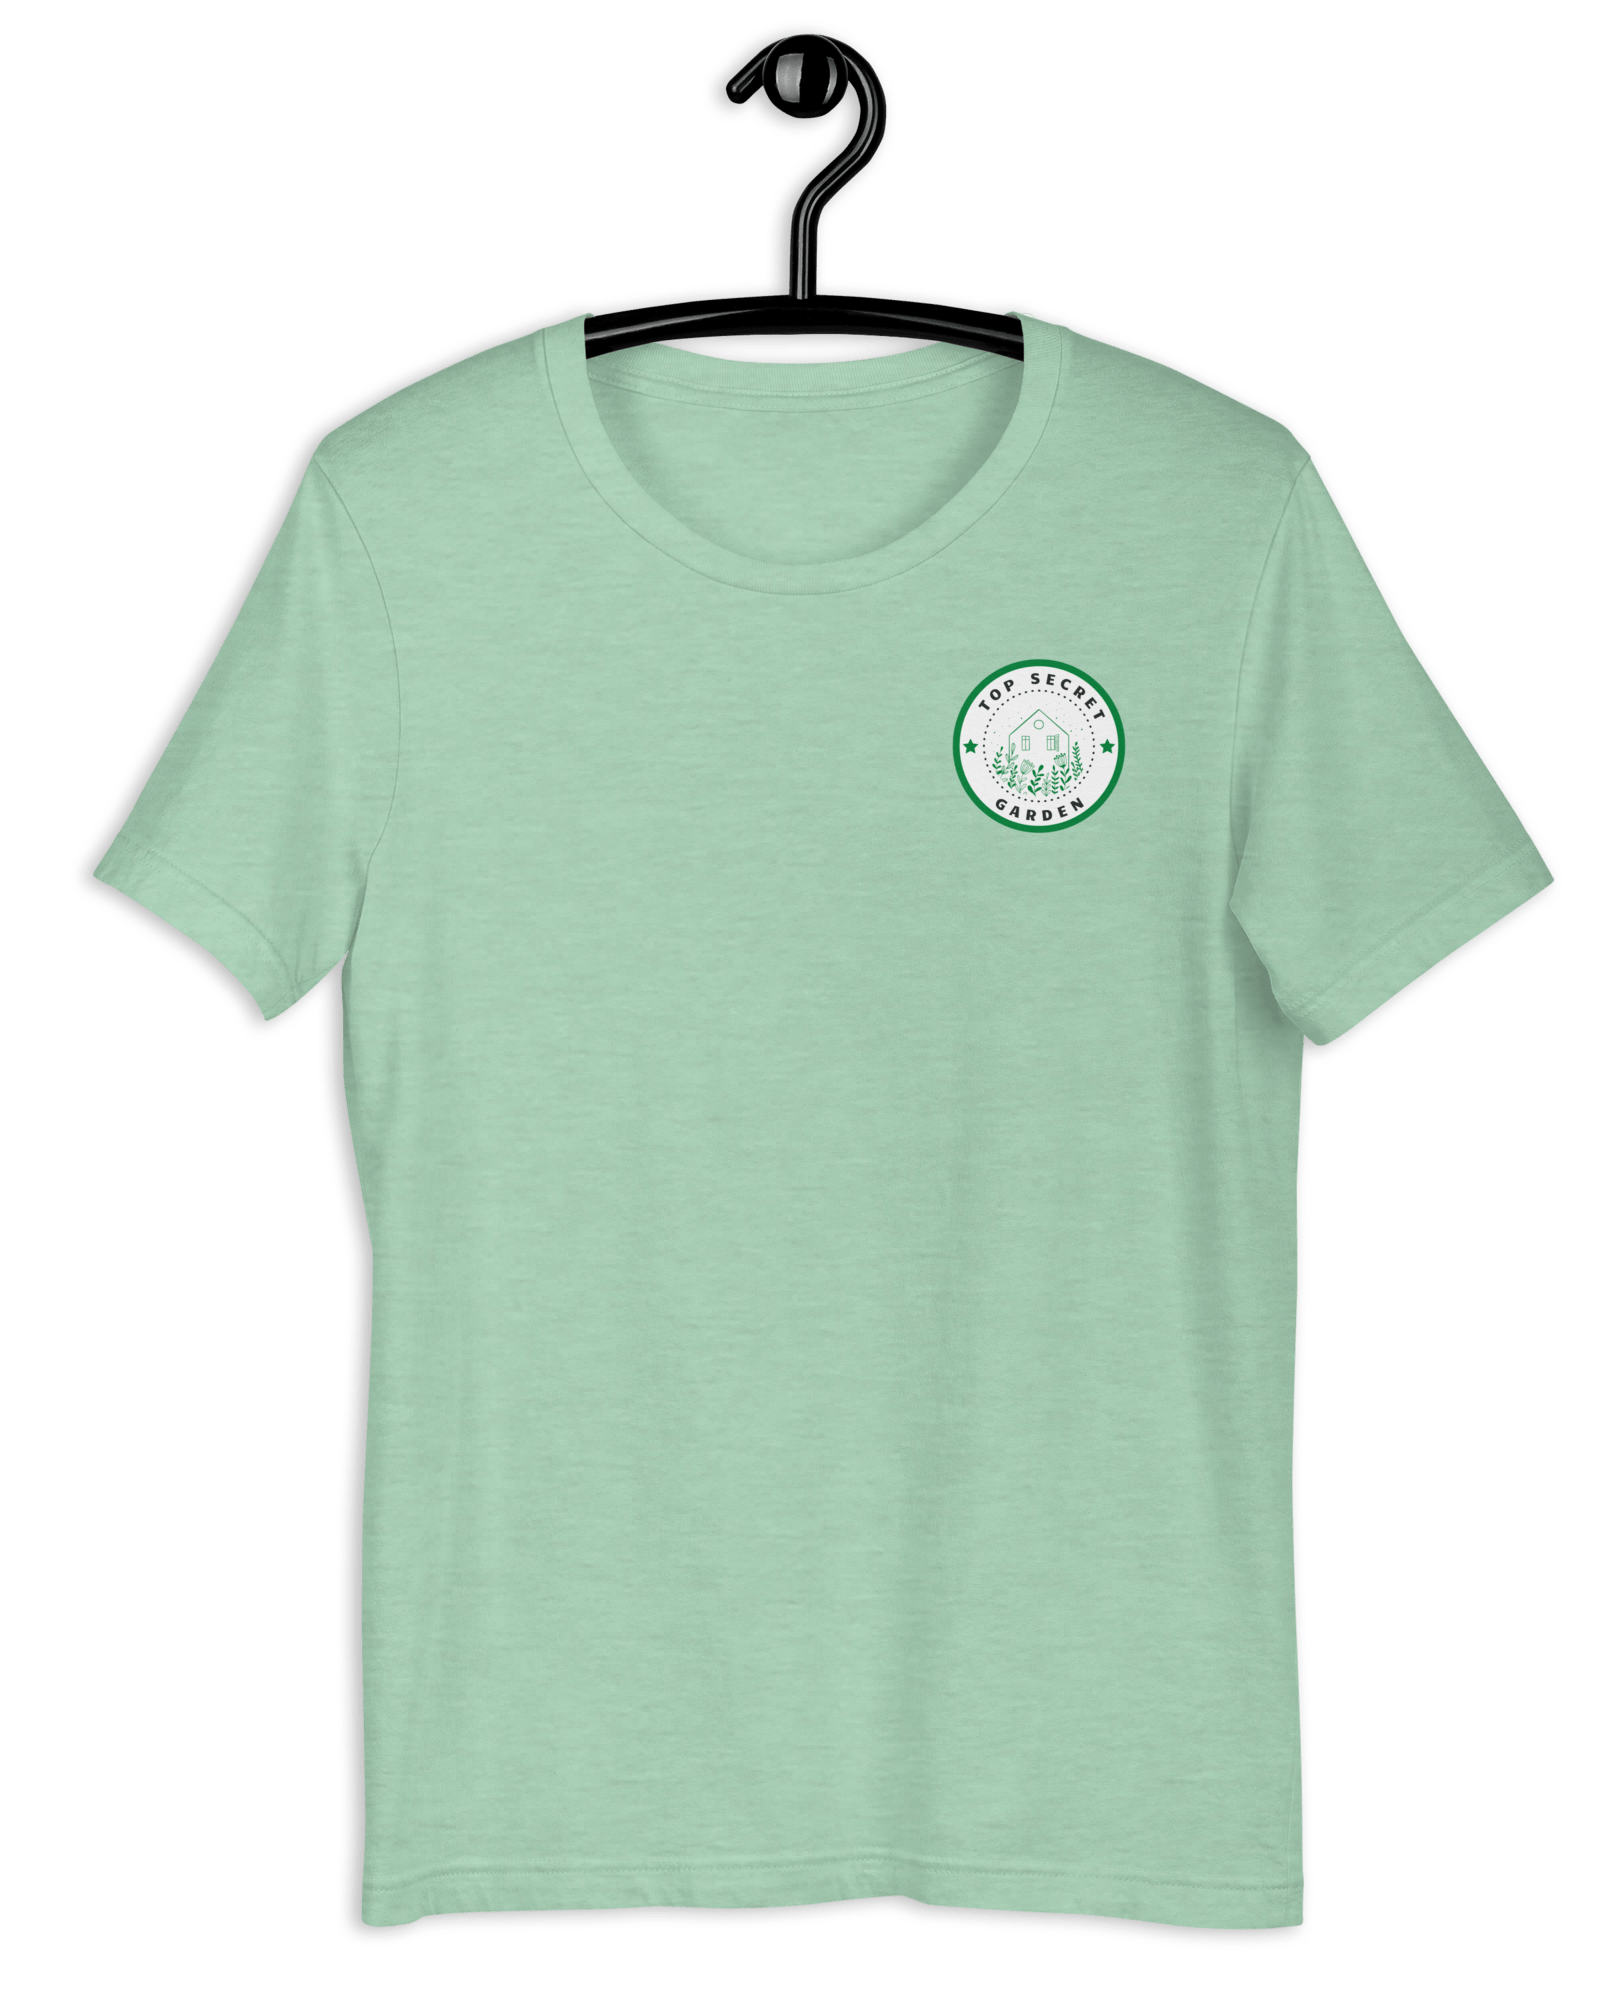 Top Secret Garden T-shirt Heather Prism Mint / S Shirts & Tops Jolly & Goode